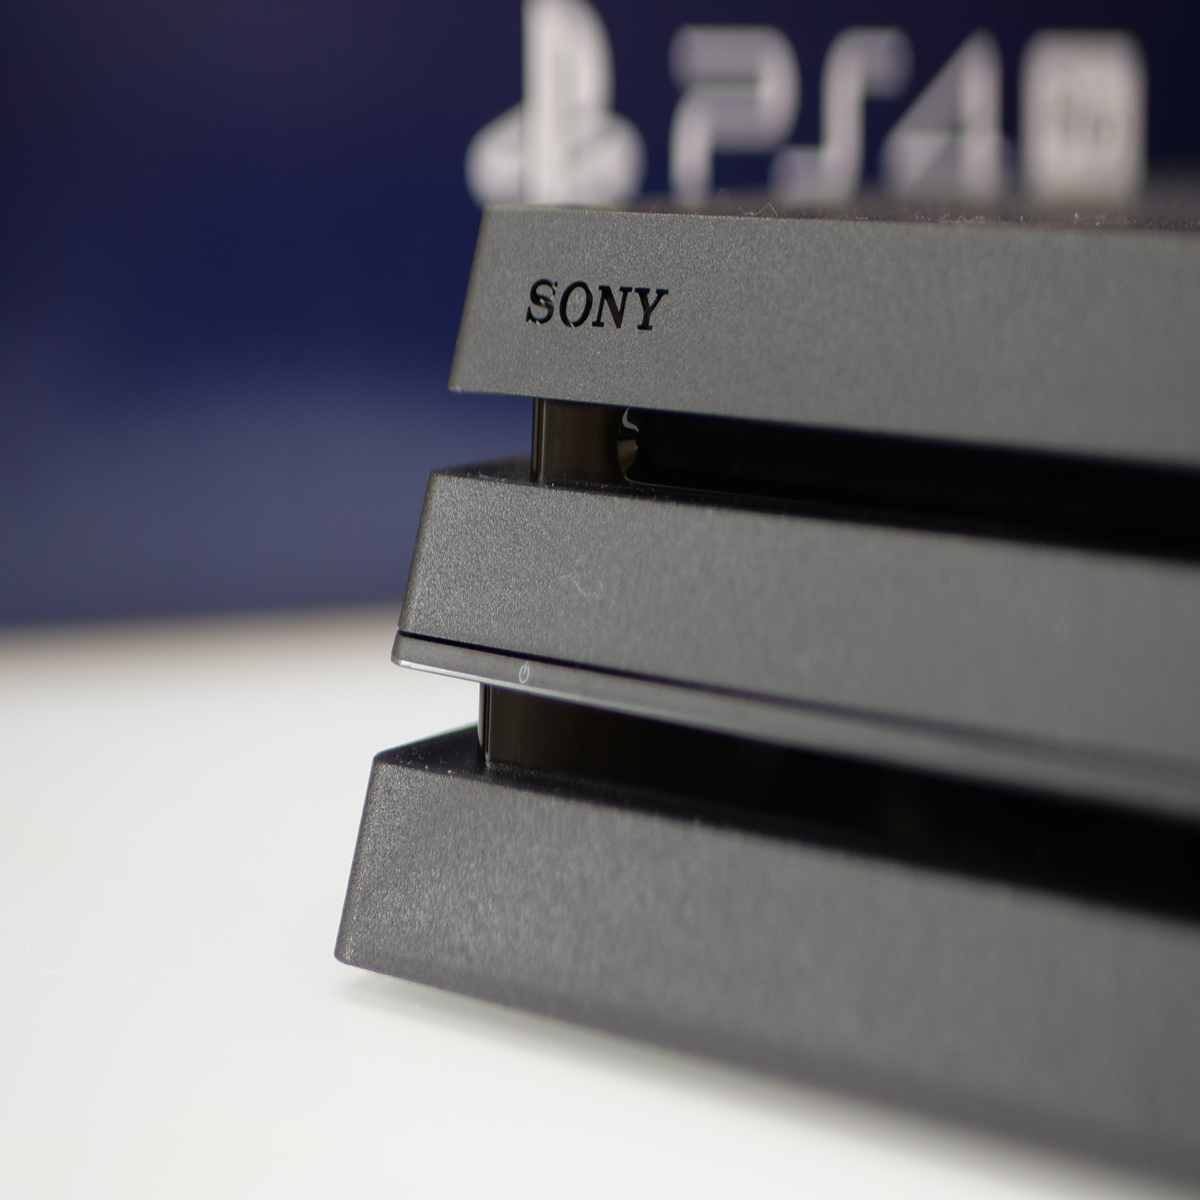 Unboxing the 500 Million LE PS4 Pro 